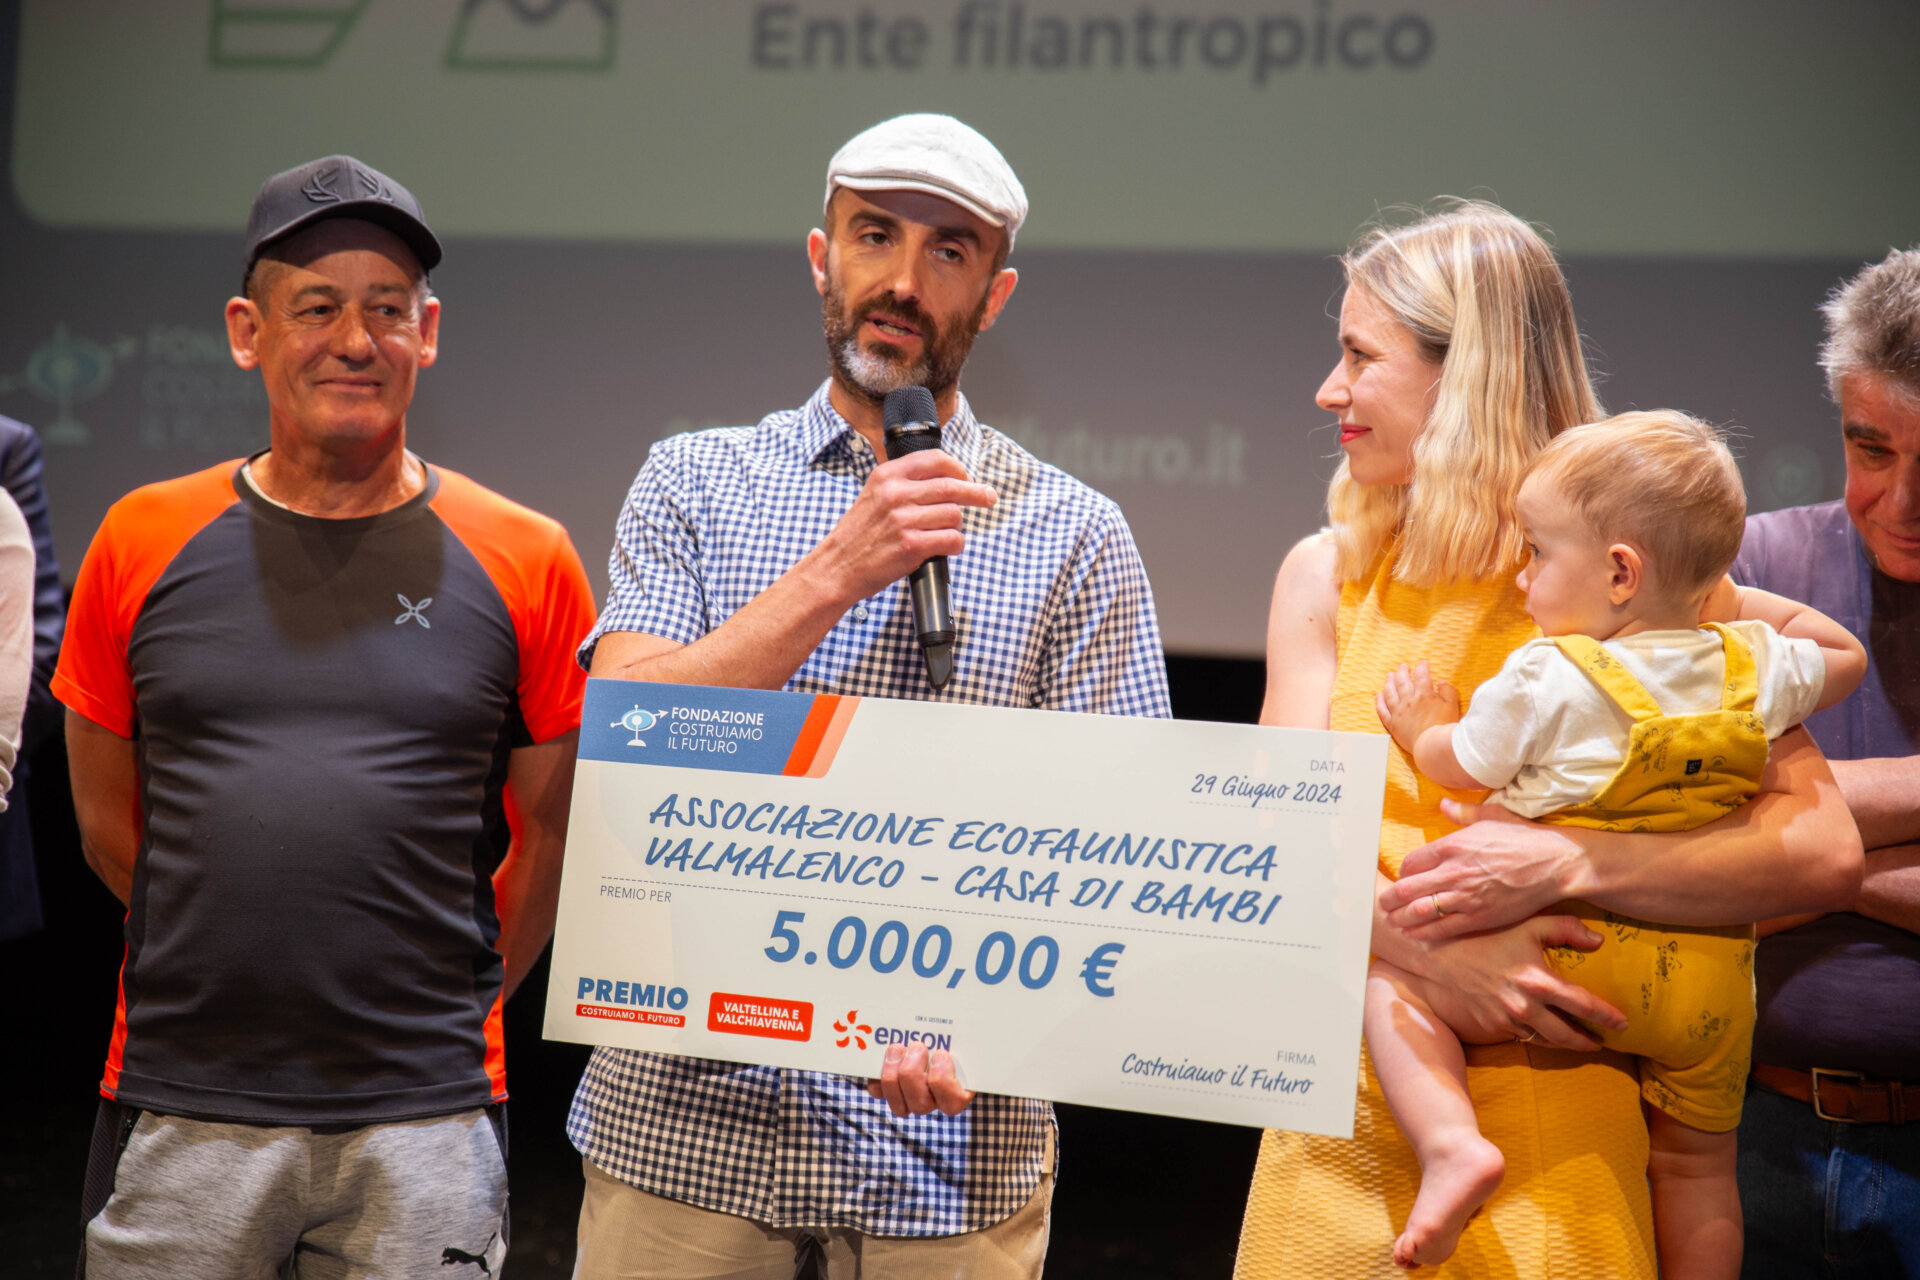 Premiazione Associazione Ecofaunistica Valmalenco